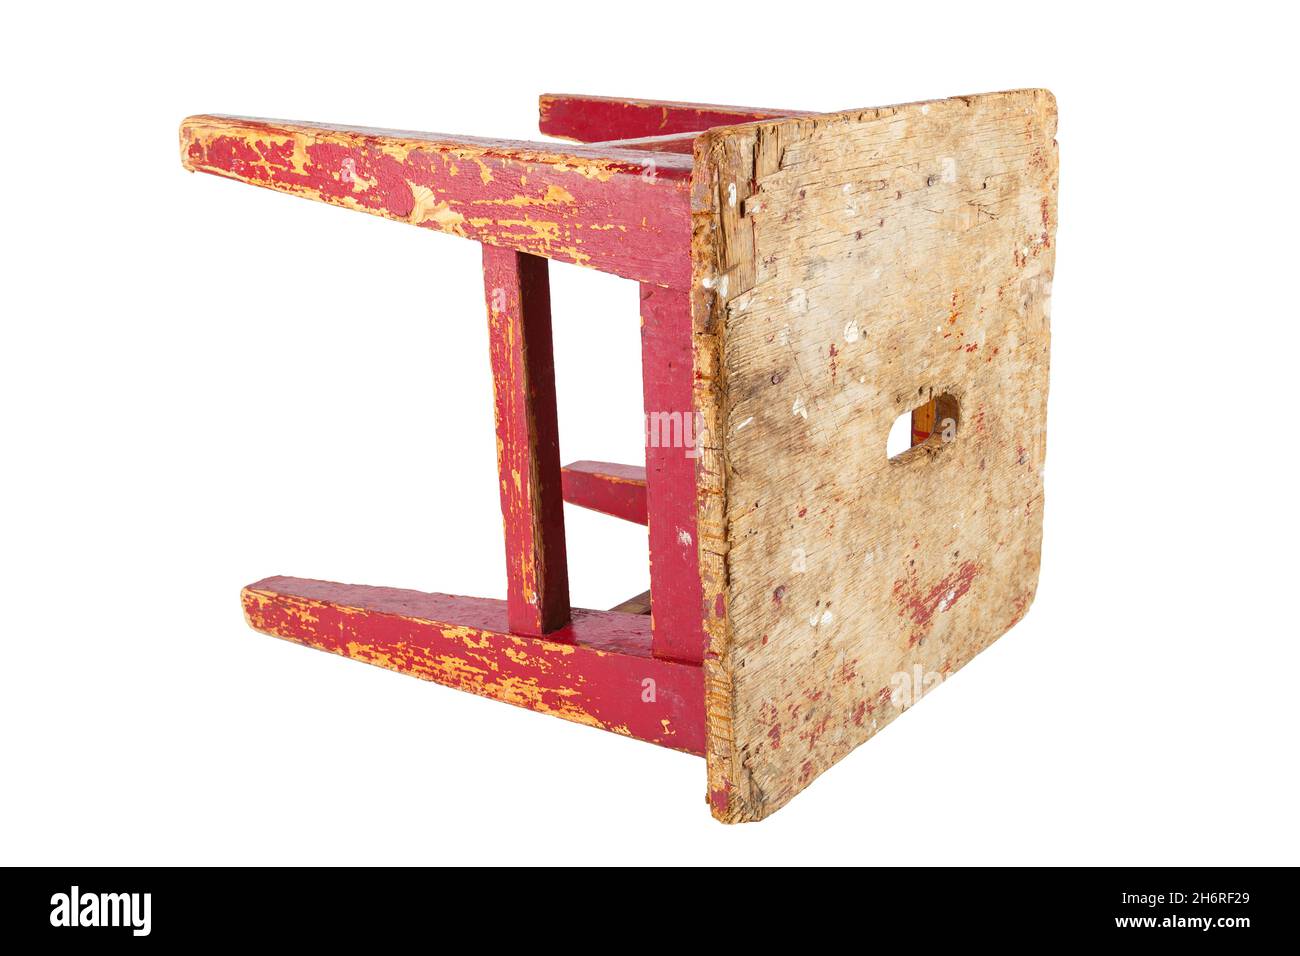 Vieux tabouret en bois avec peinture rouge qui s'écaille.Chaise de style loft isolée sur fond blanc. Banque D'Images